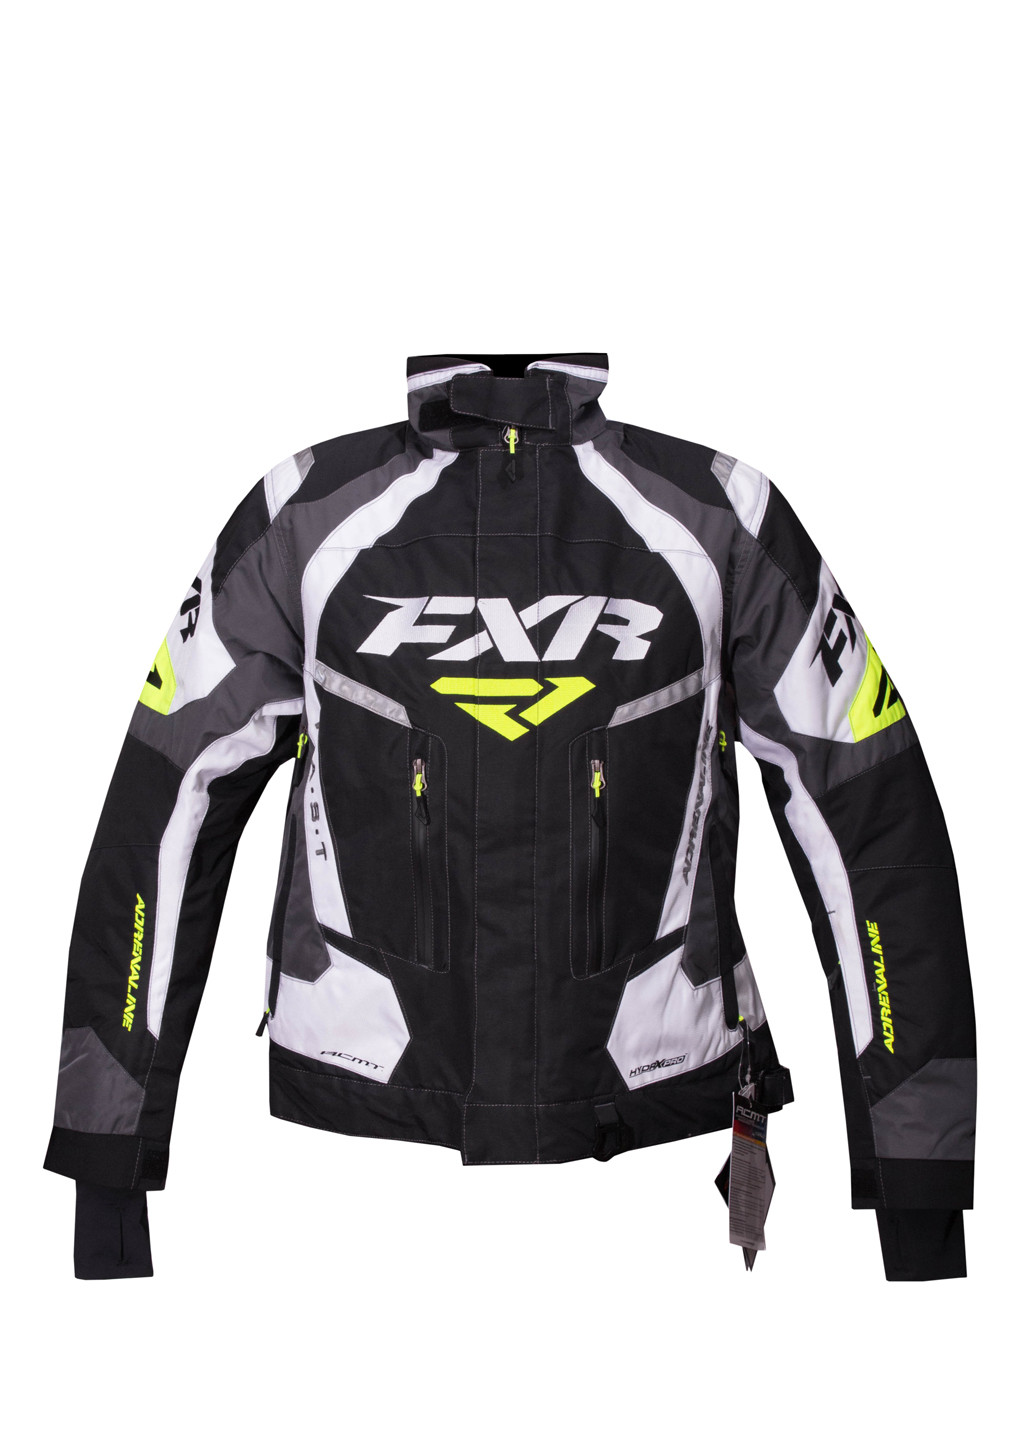 Черная зимняя куртка лыжная FXR